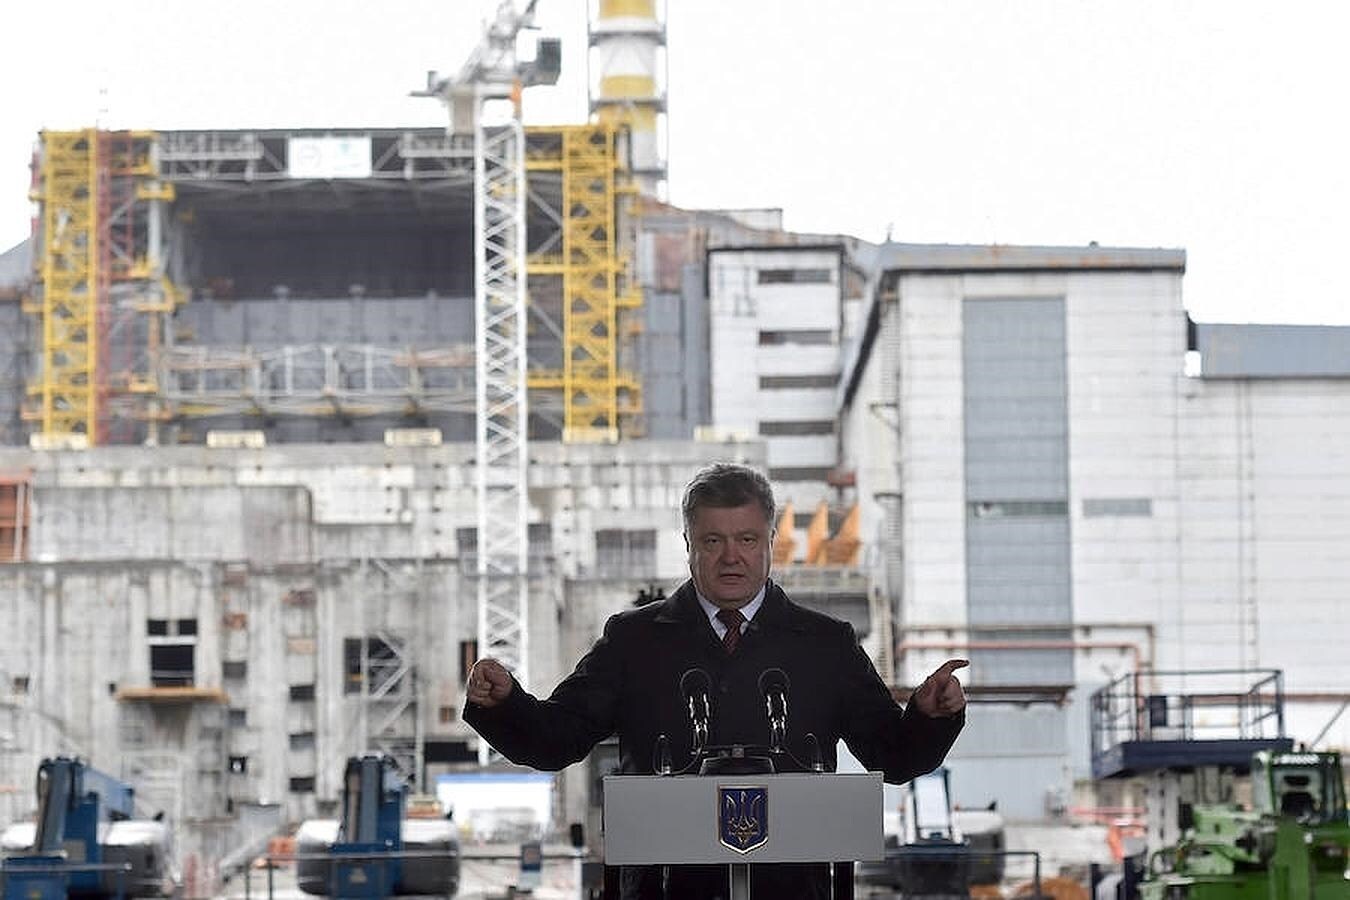 El presidente ucraniano, Petro Poroshenko, pronuncia un discurso durante la ceremonia de conmemoración del 30 aniversario de la catástrofe de Chernóbil. Al fondo se puede ver el sarcófago que cubre el cuarto reactor de la central nuclear, que sufrió la explosión en 1986 